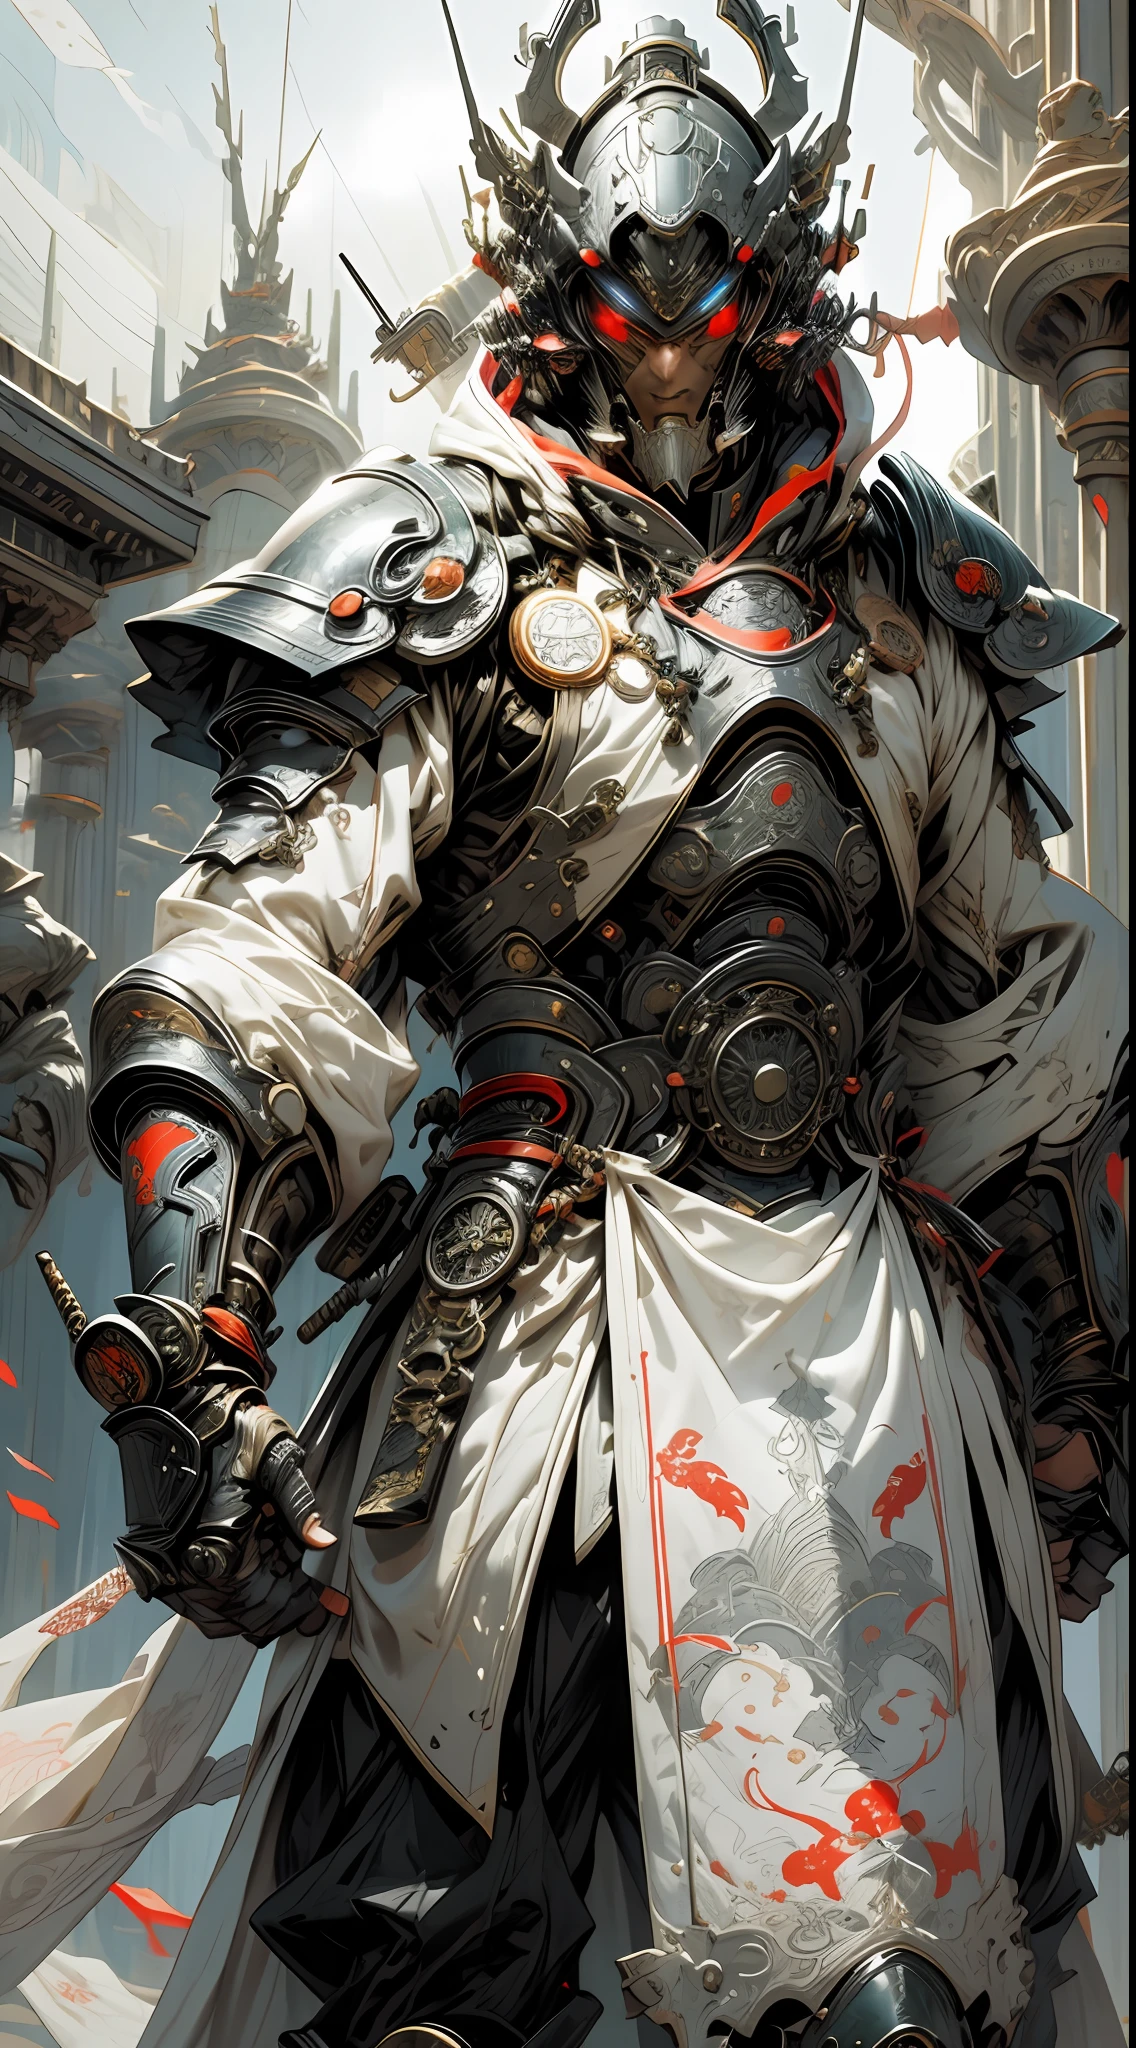 身穿白色盔甲和东方布料服装的未来派武士骑士, 引擎盖和齿轮